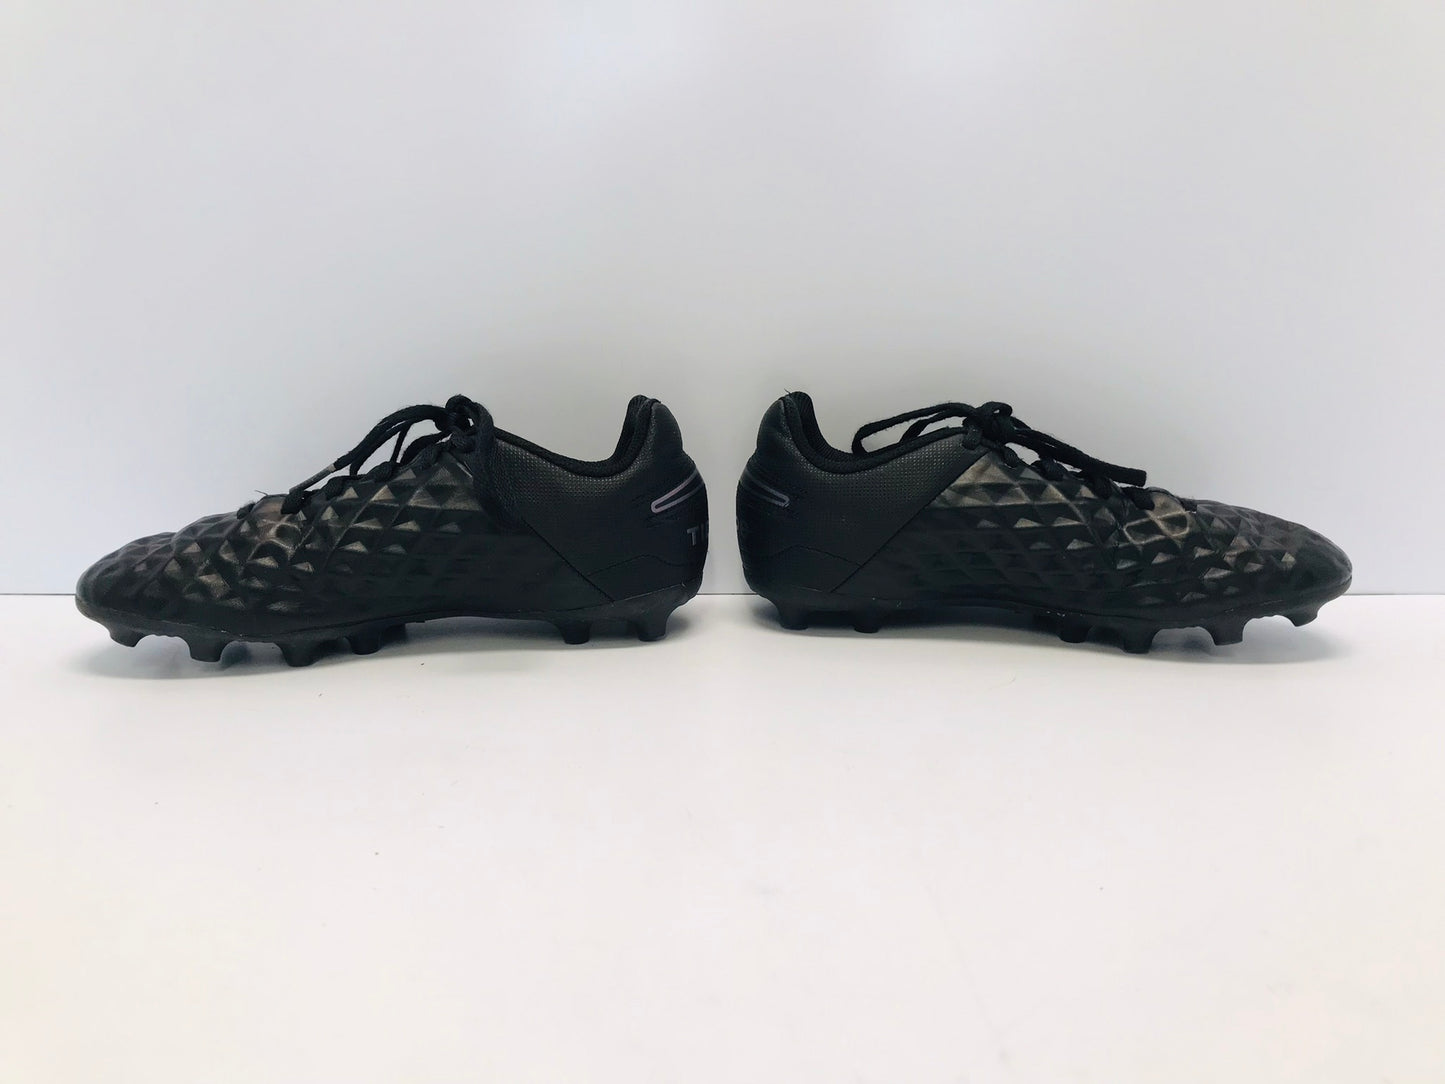 Soccer Shoes Cleats Child Size 2 Shoe Size Nike  Tiempo Excellent Black